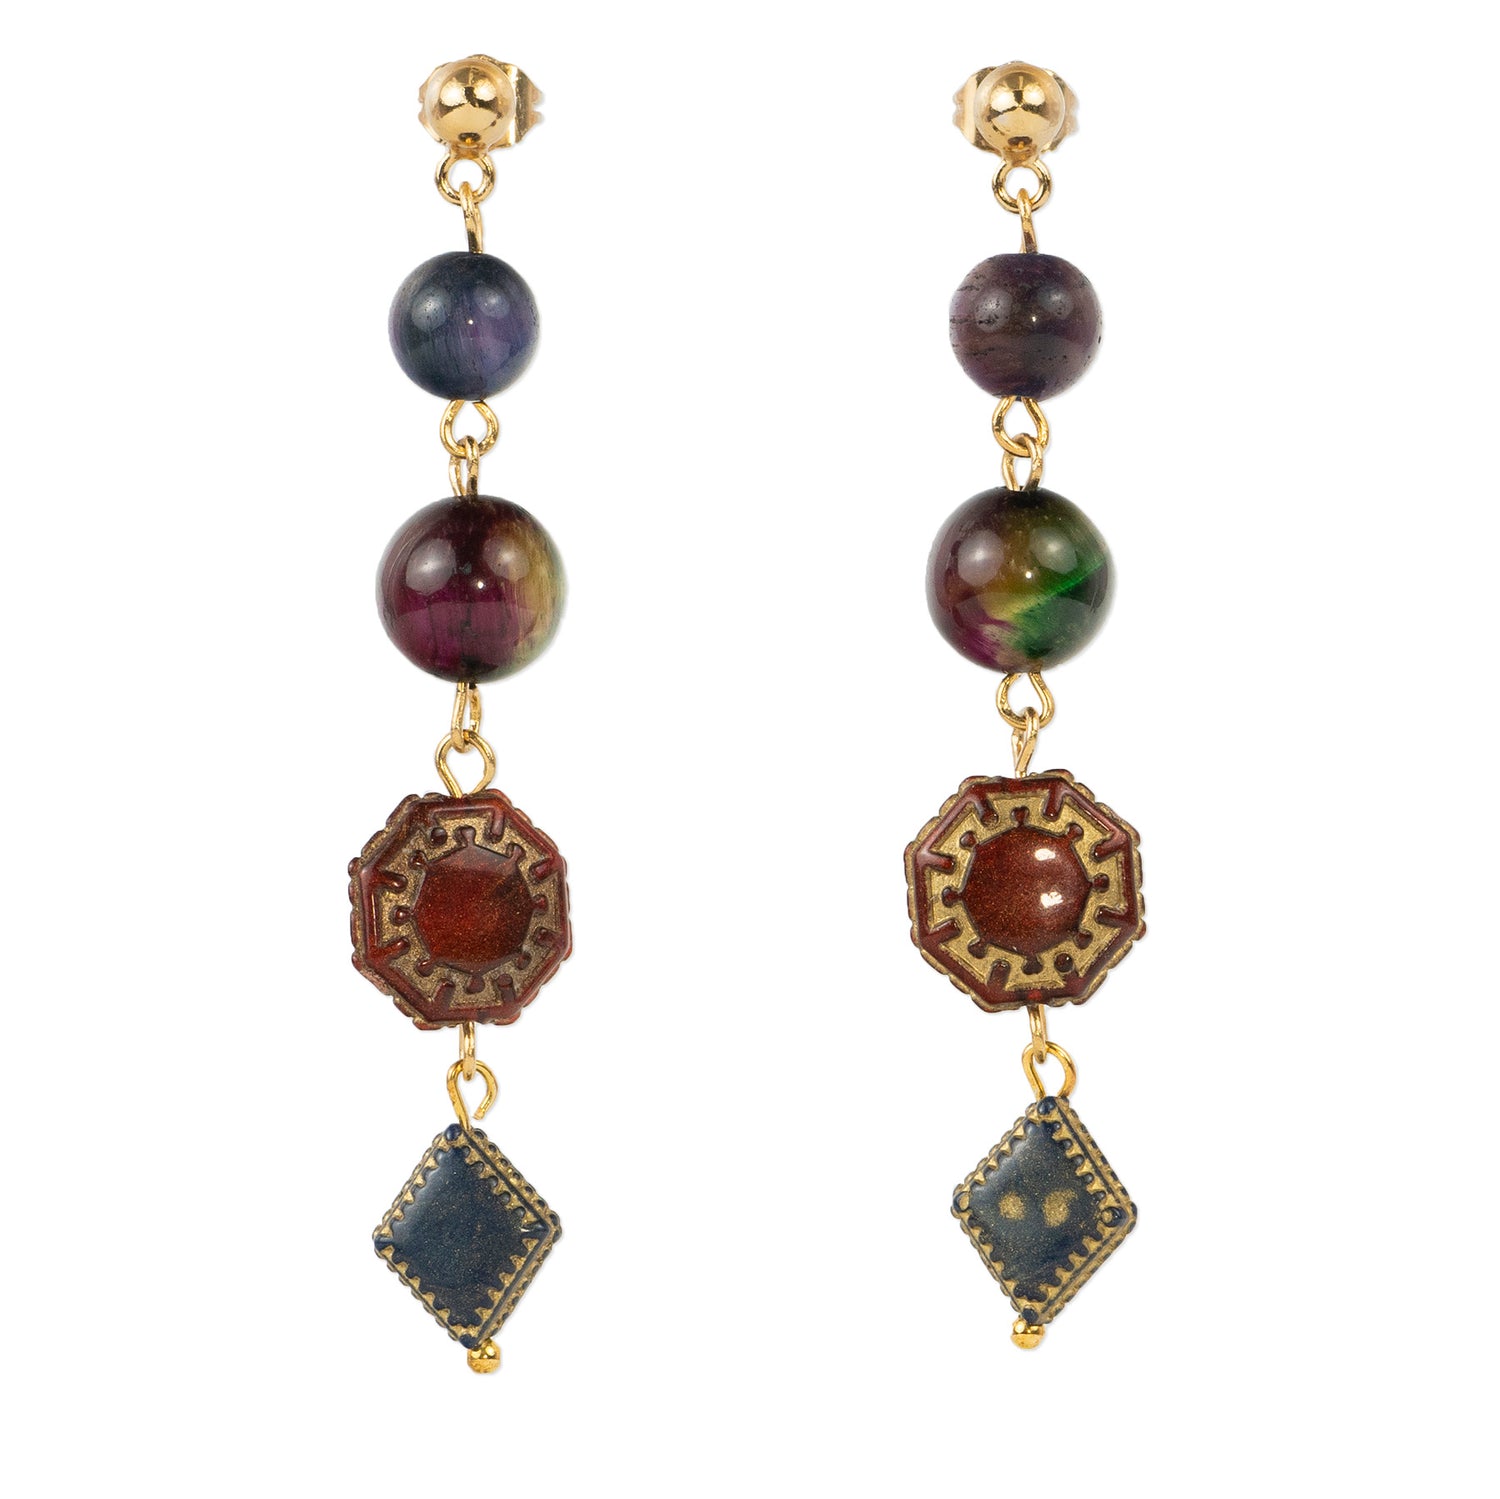 Pendant earrings in semi-precious stones